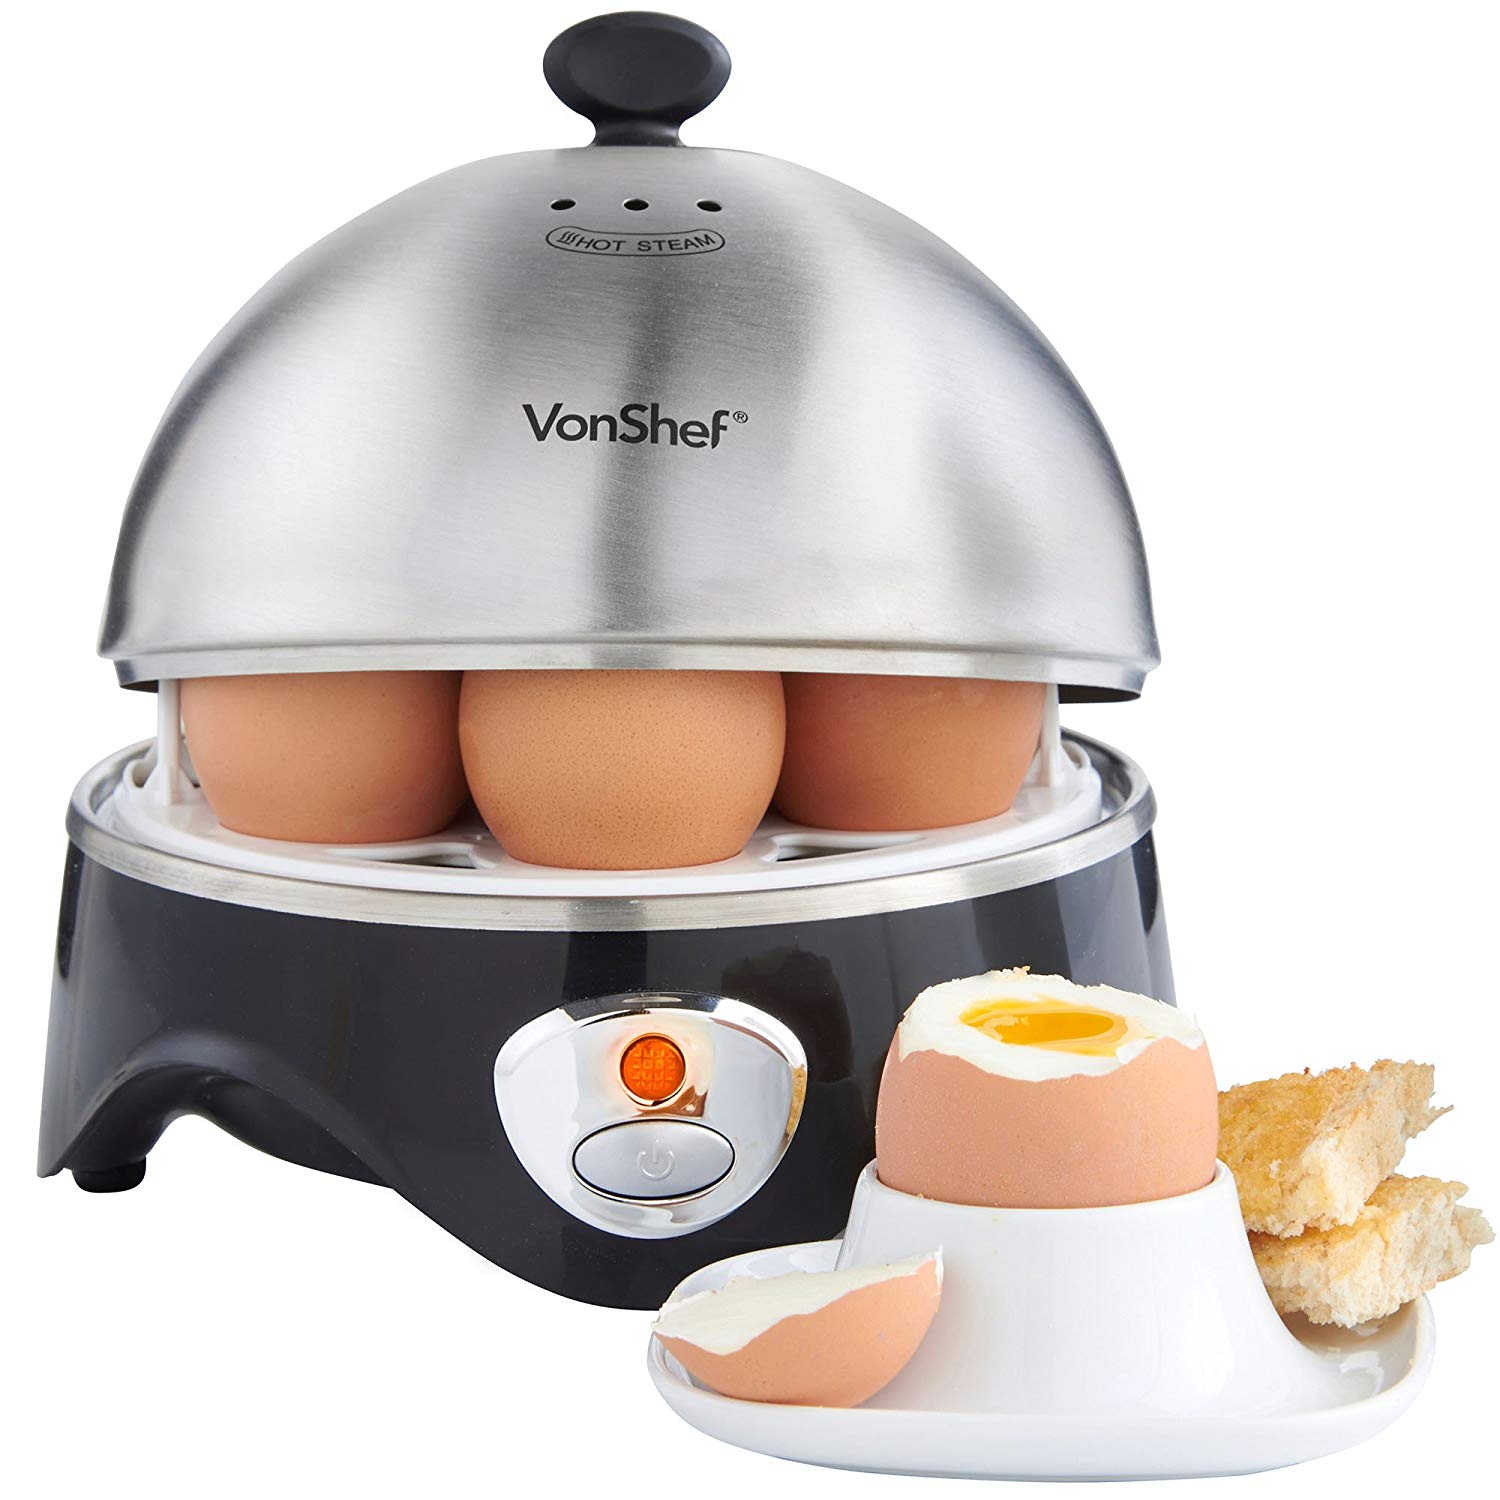  VonShelf Electric Egg Cooker